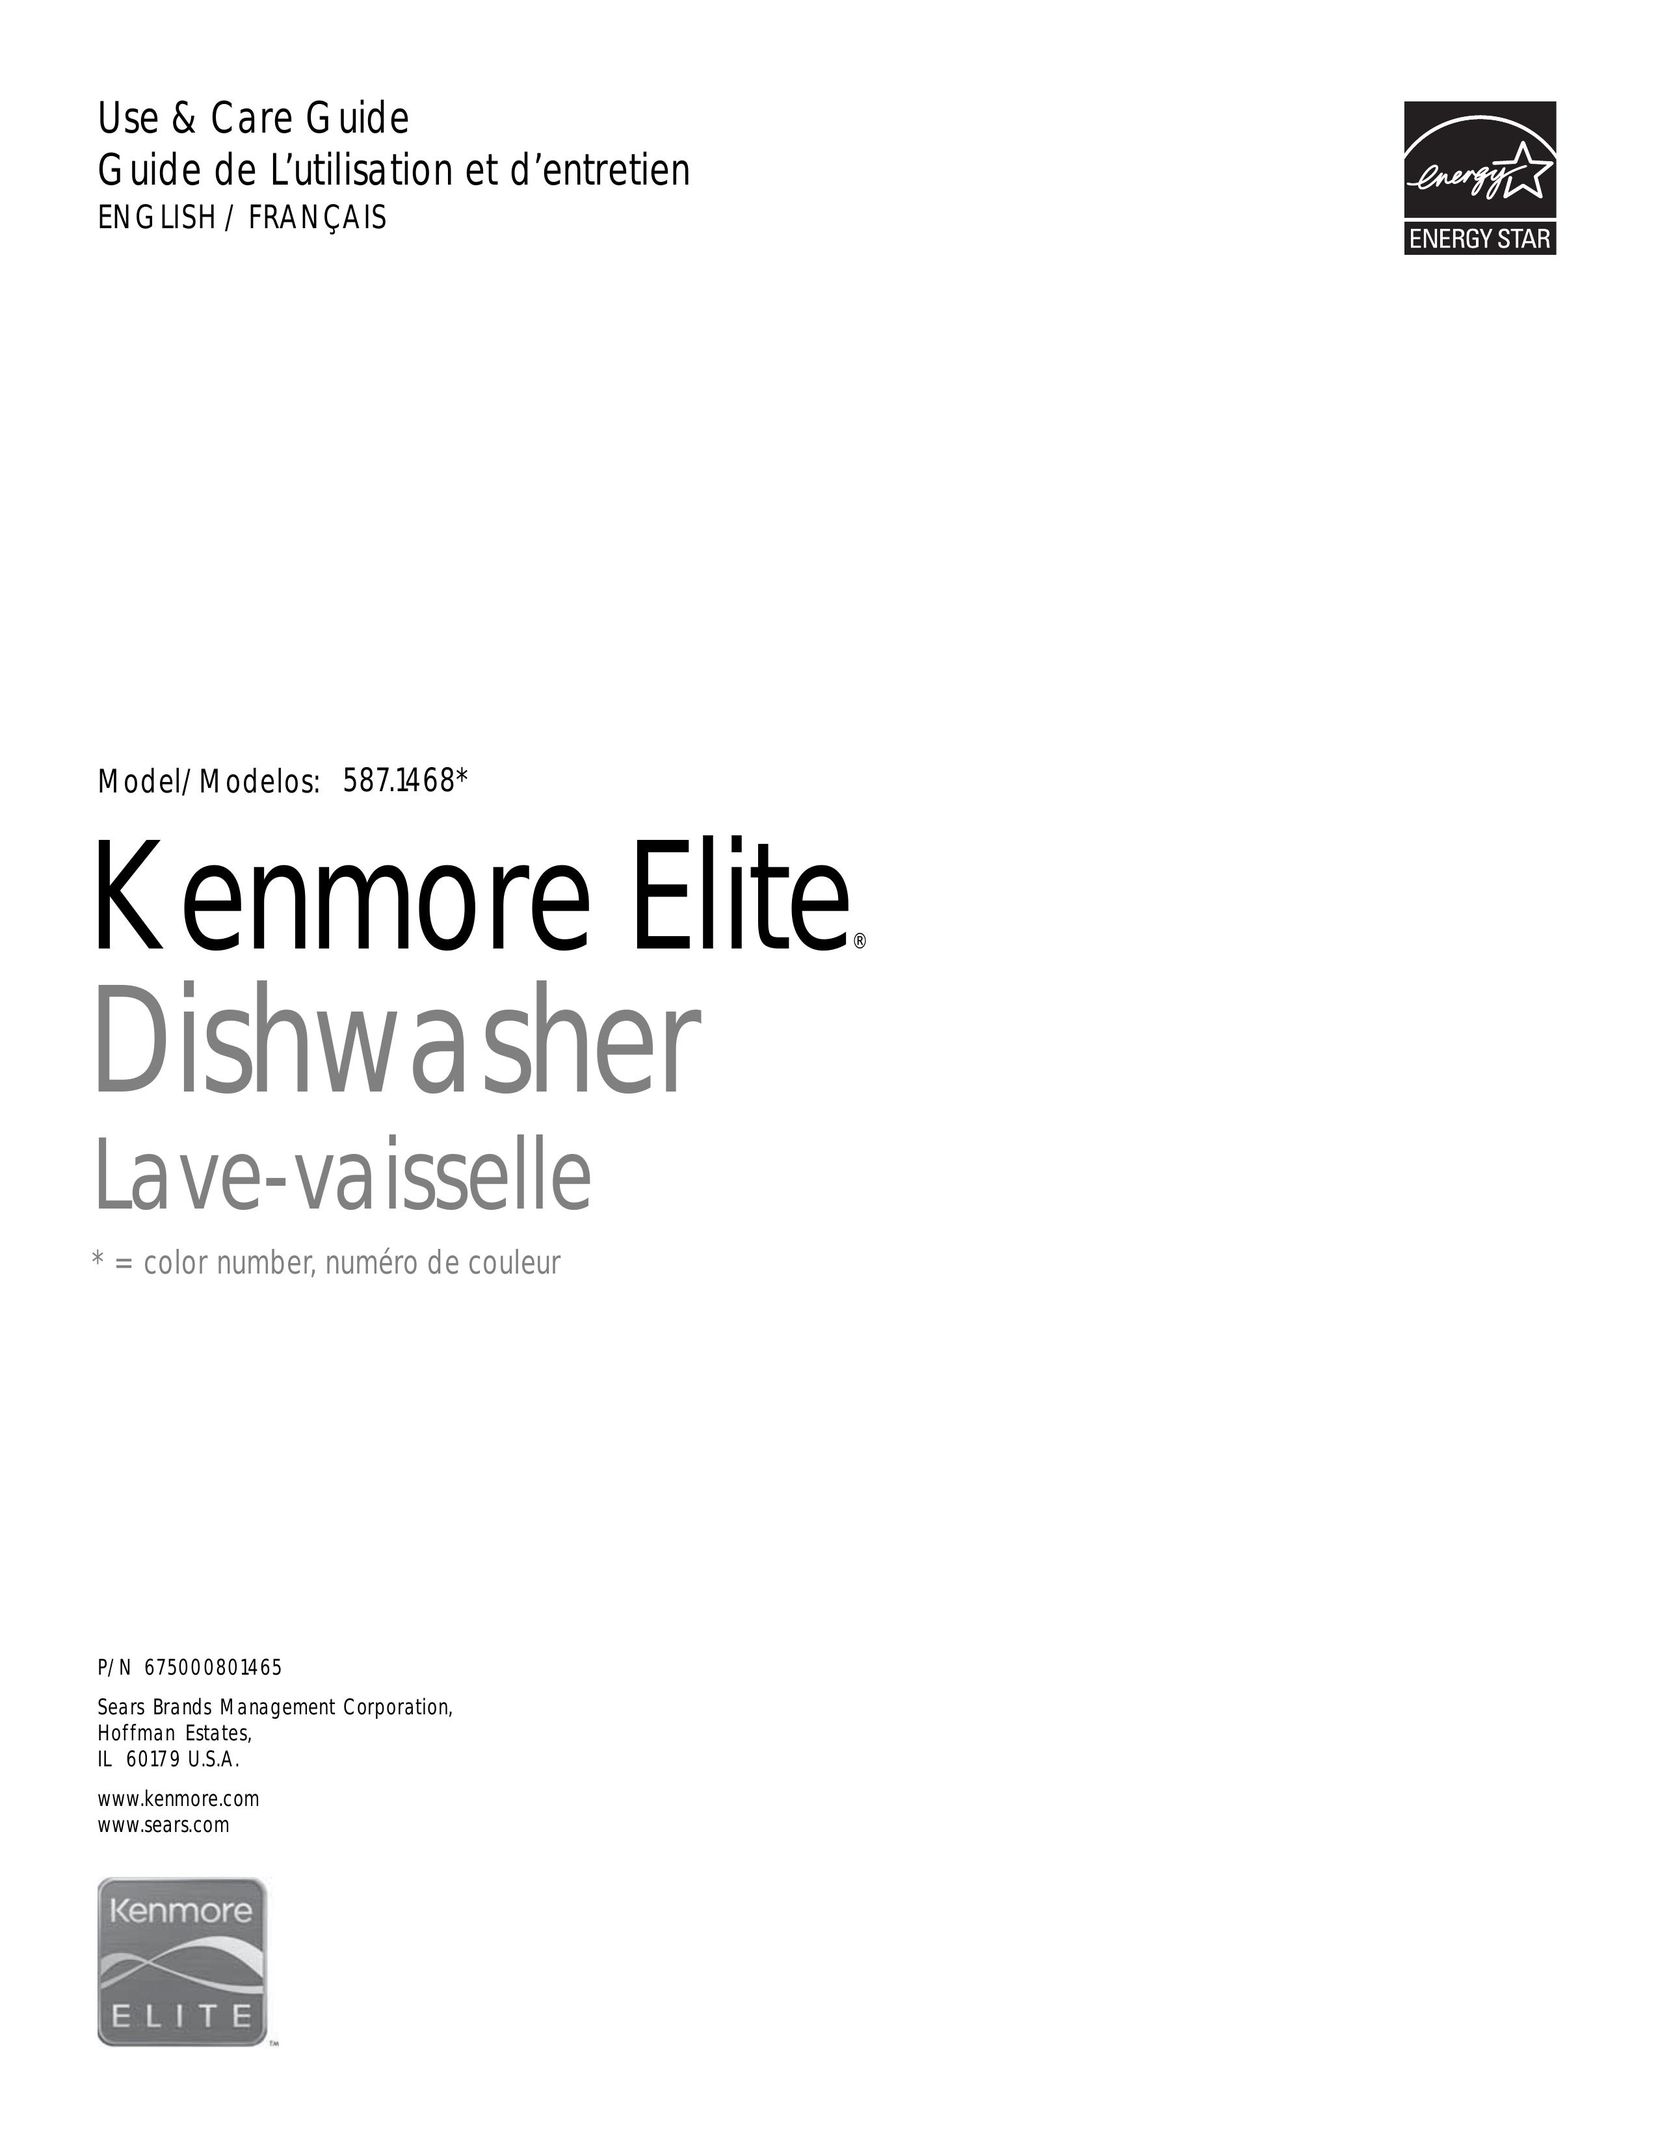 Kenmore 587.1468 Dishwasher User Manual